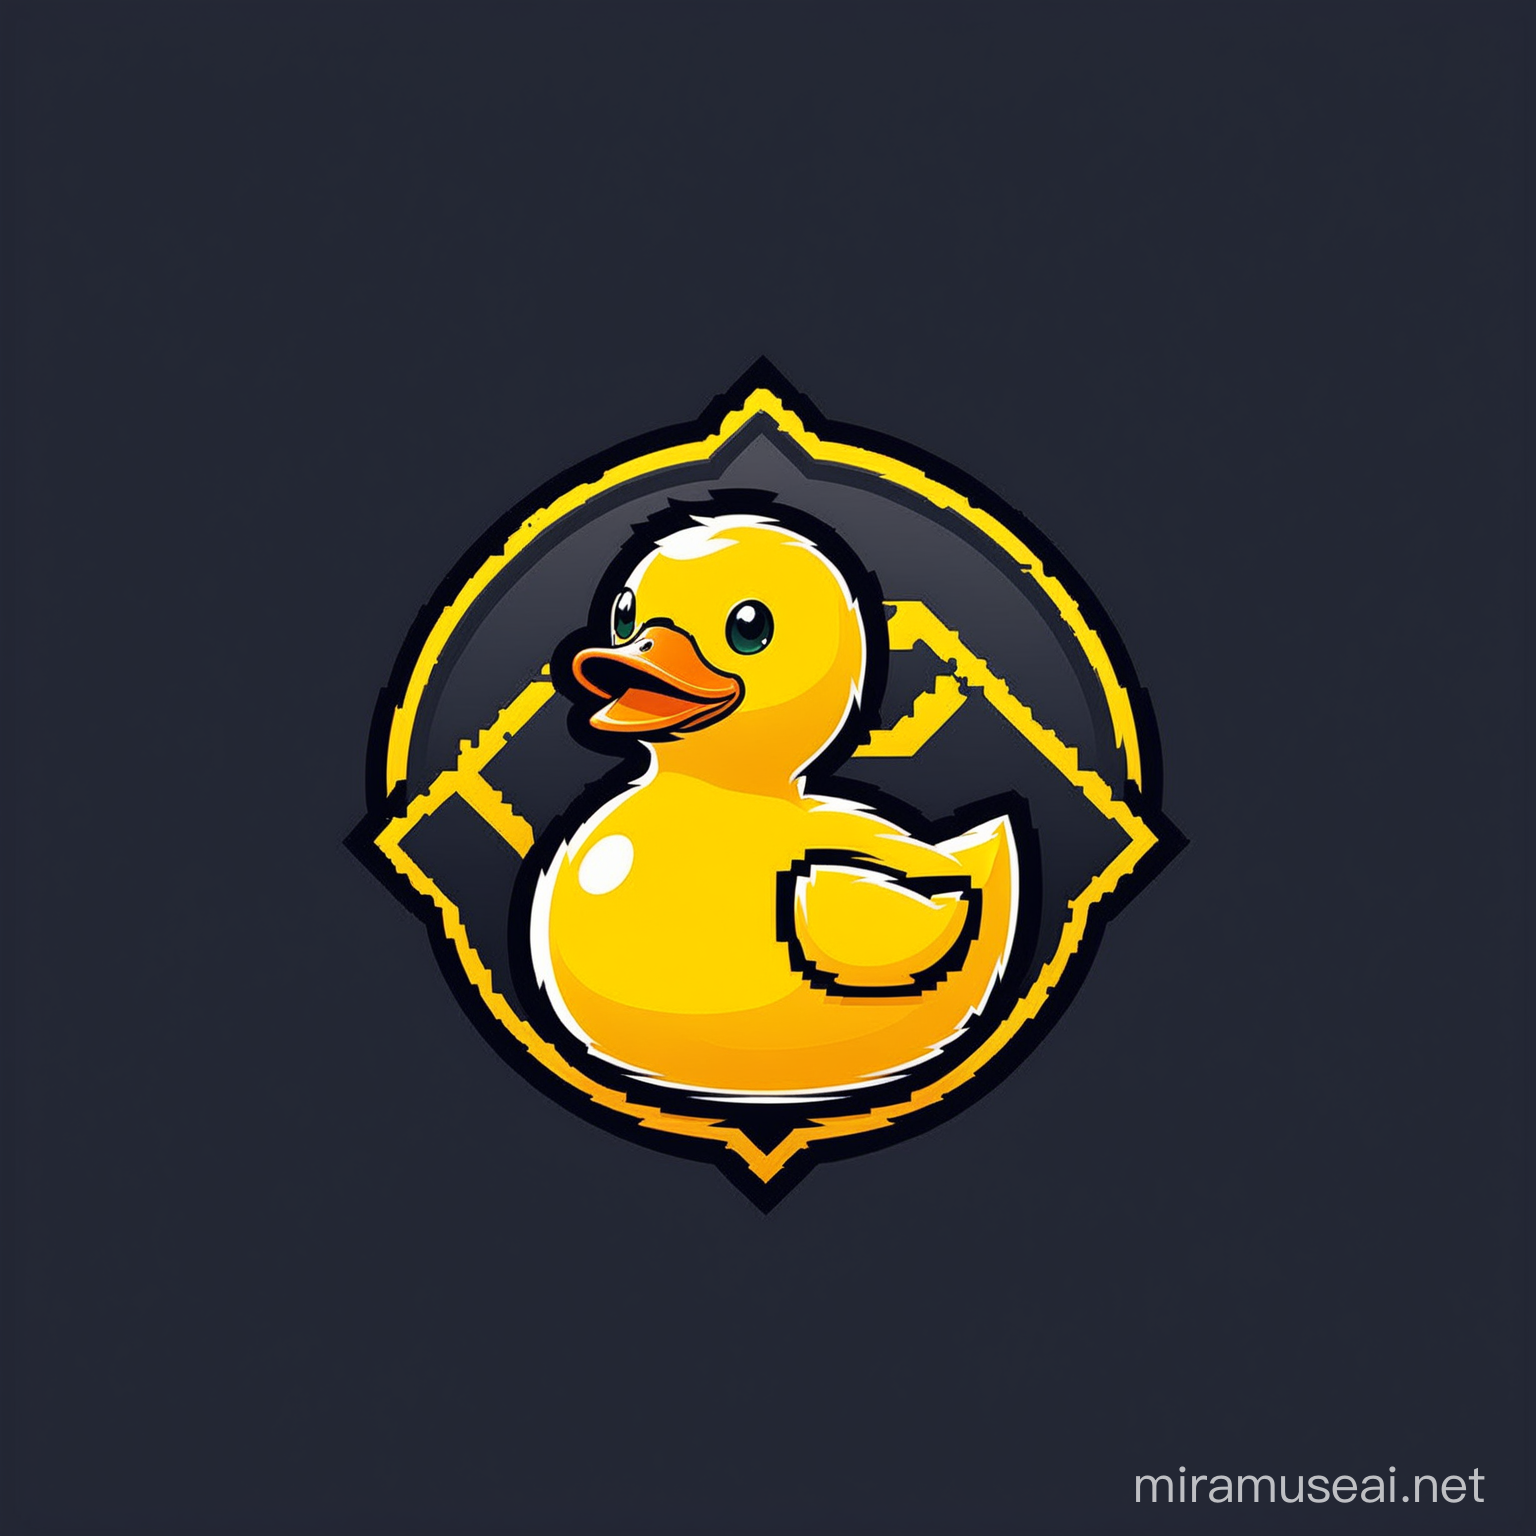  Simple Minimalist E-Sport logo style, mascot logo for "rubber duck"